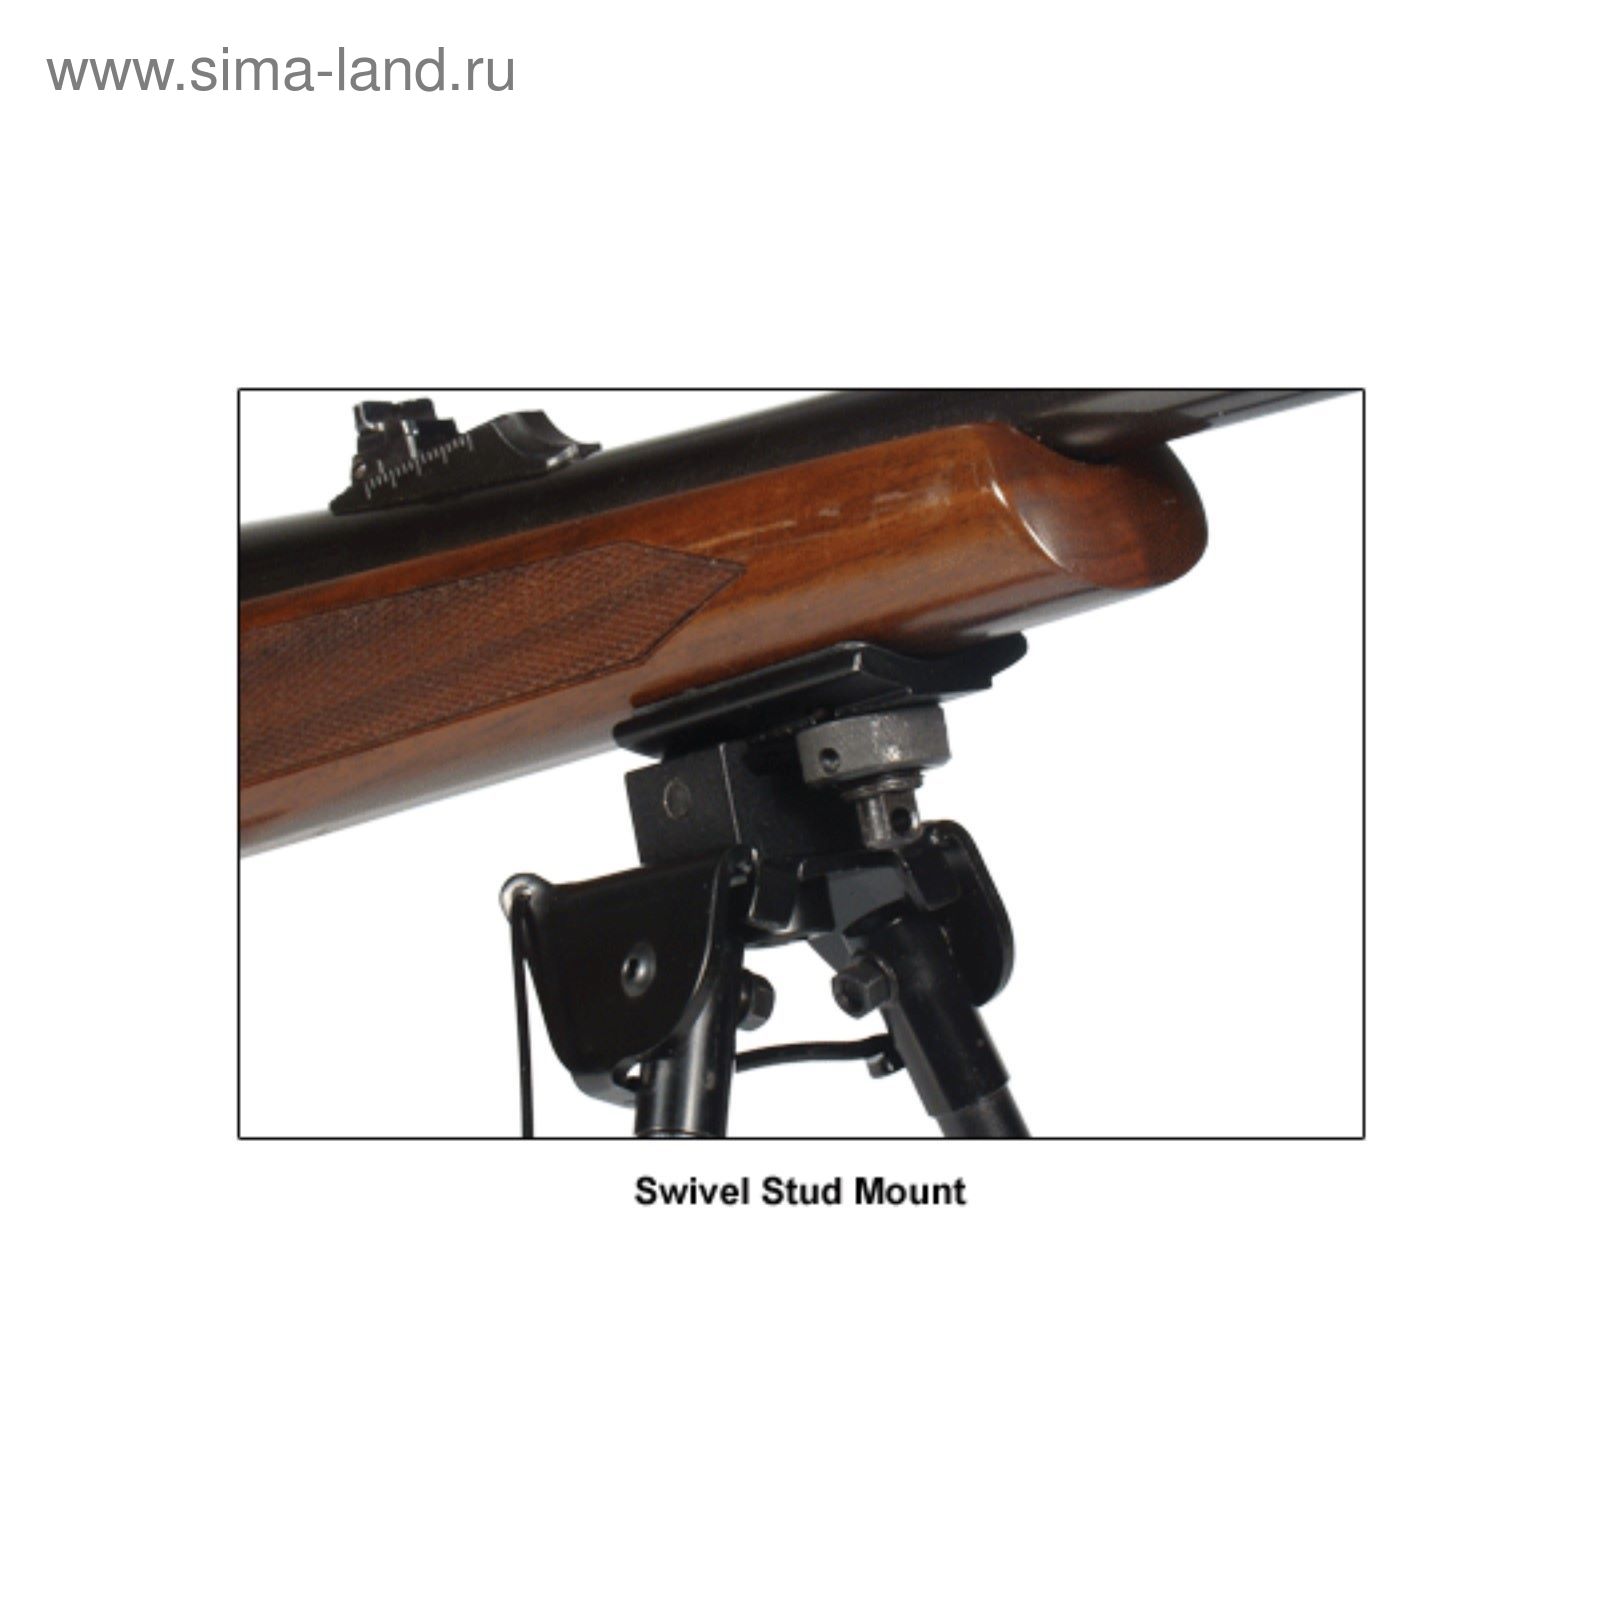 Сошки UTG для установки на оружие на планку Picatinny, регулируемые, высота 15 - 20 см